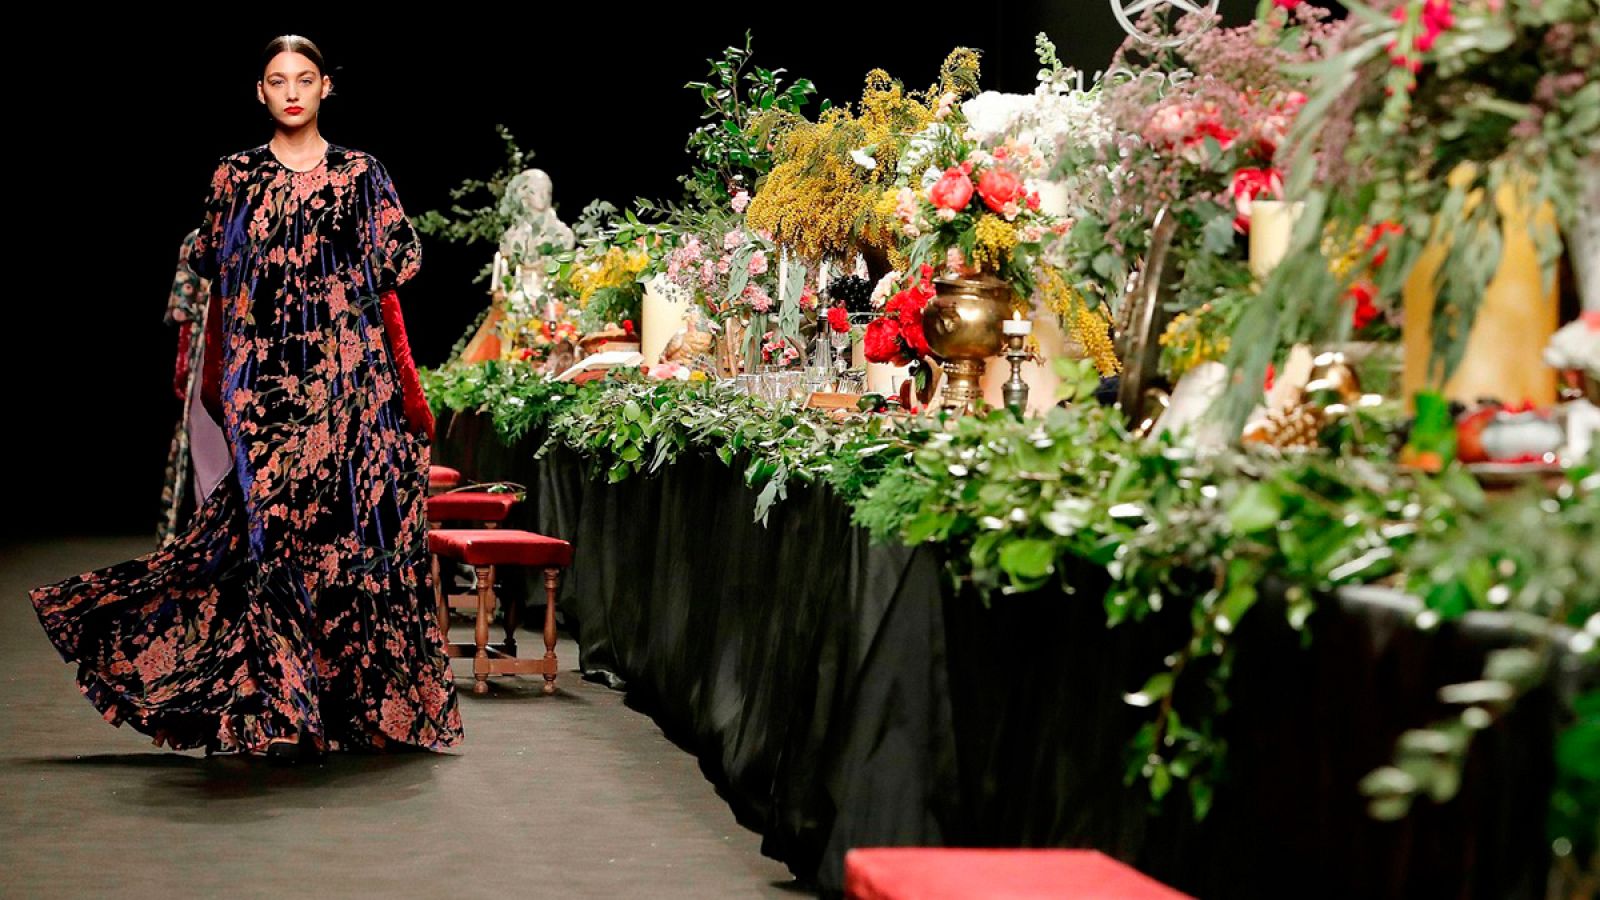 Las flores inundan la colección del modista Juan Duyos.